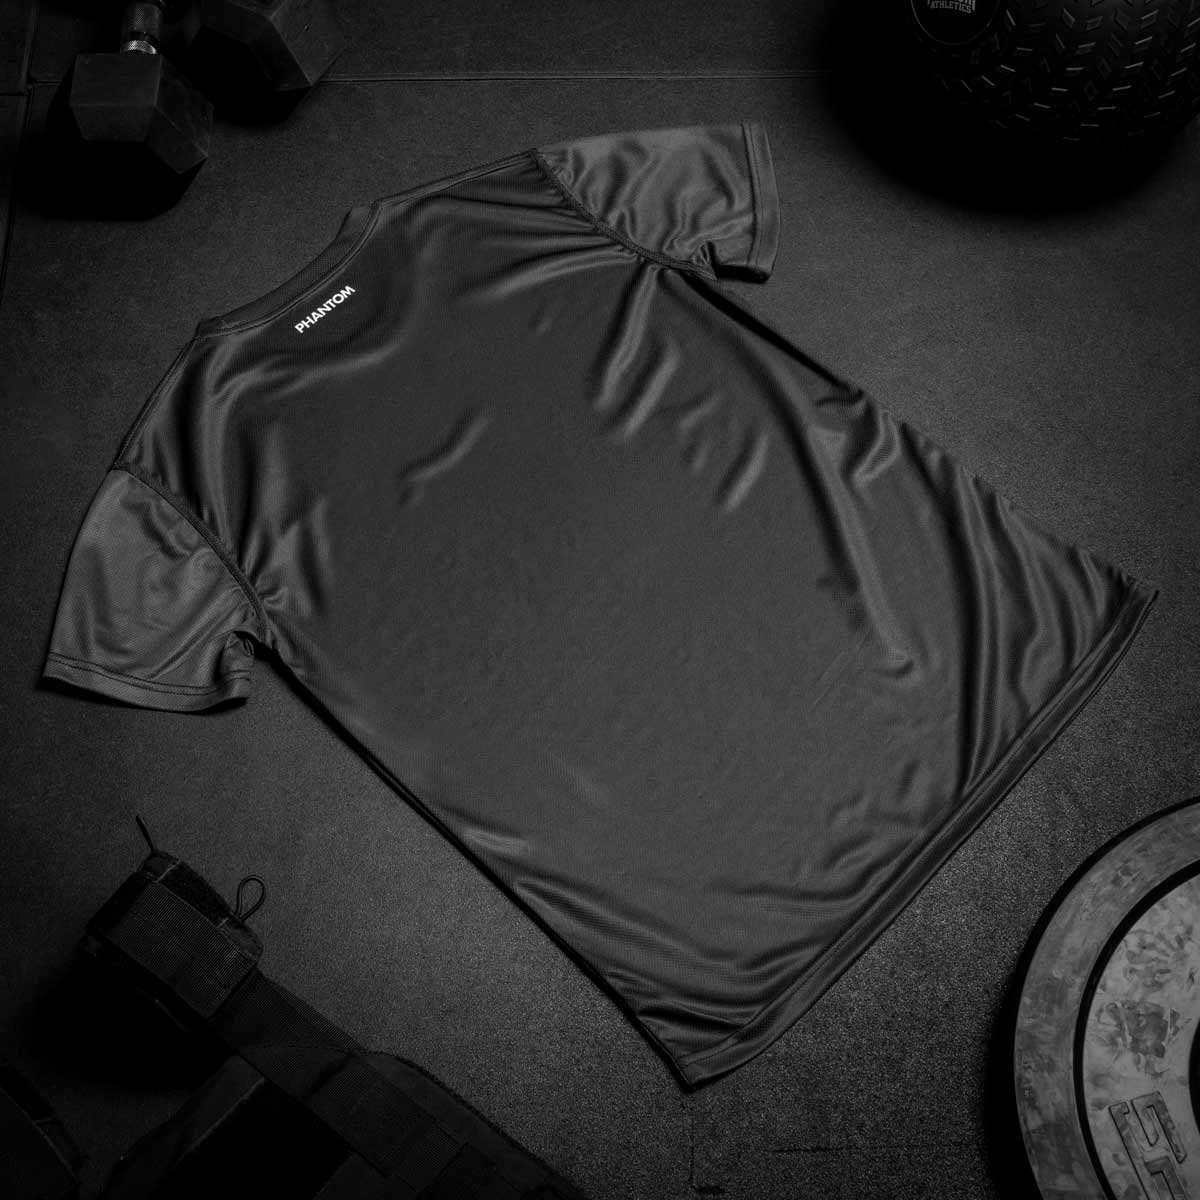 Das Phantom EVO Wrestling Trainingsshirt. Funktionales, atmungsaktives Material für dein Ringertraining. Hochwertiger Sublimationsdruck für ein cleanes Design.